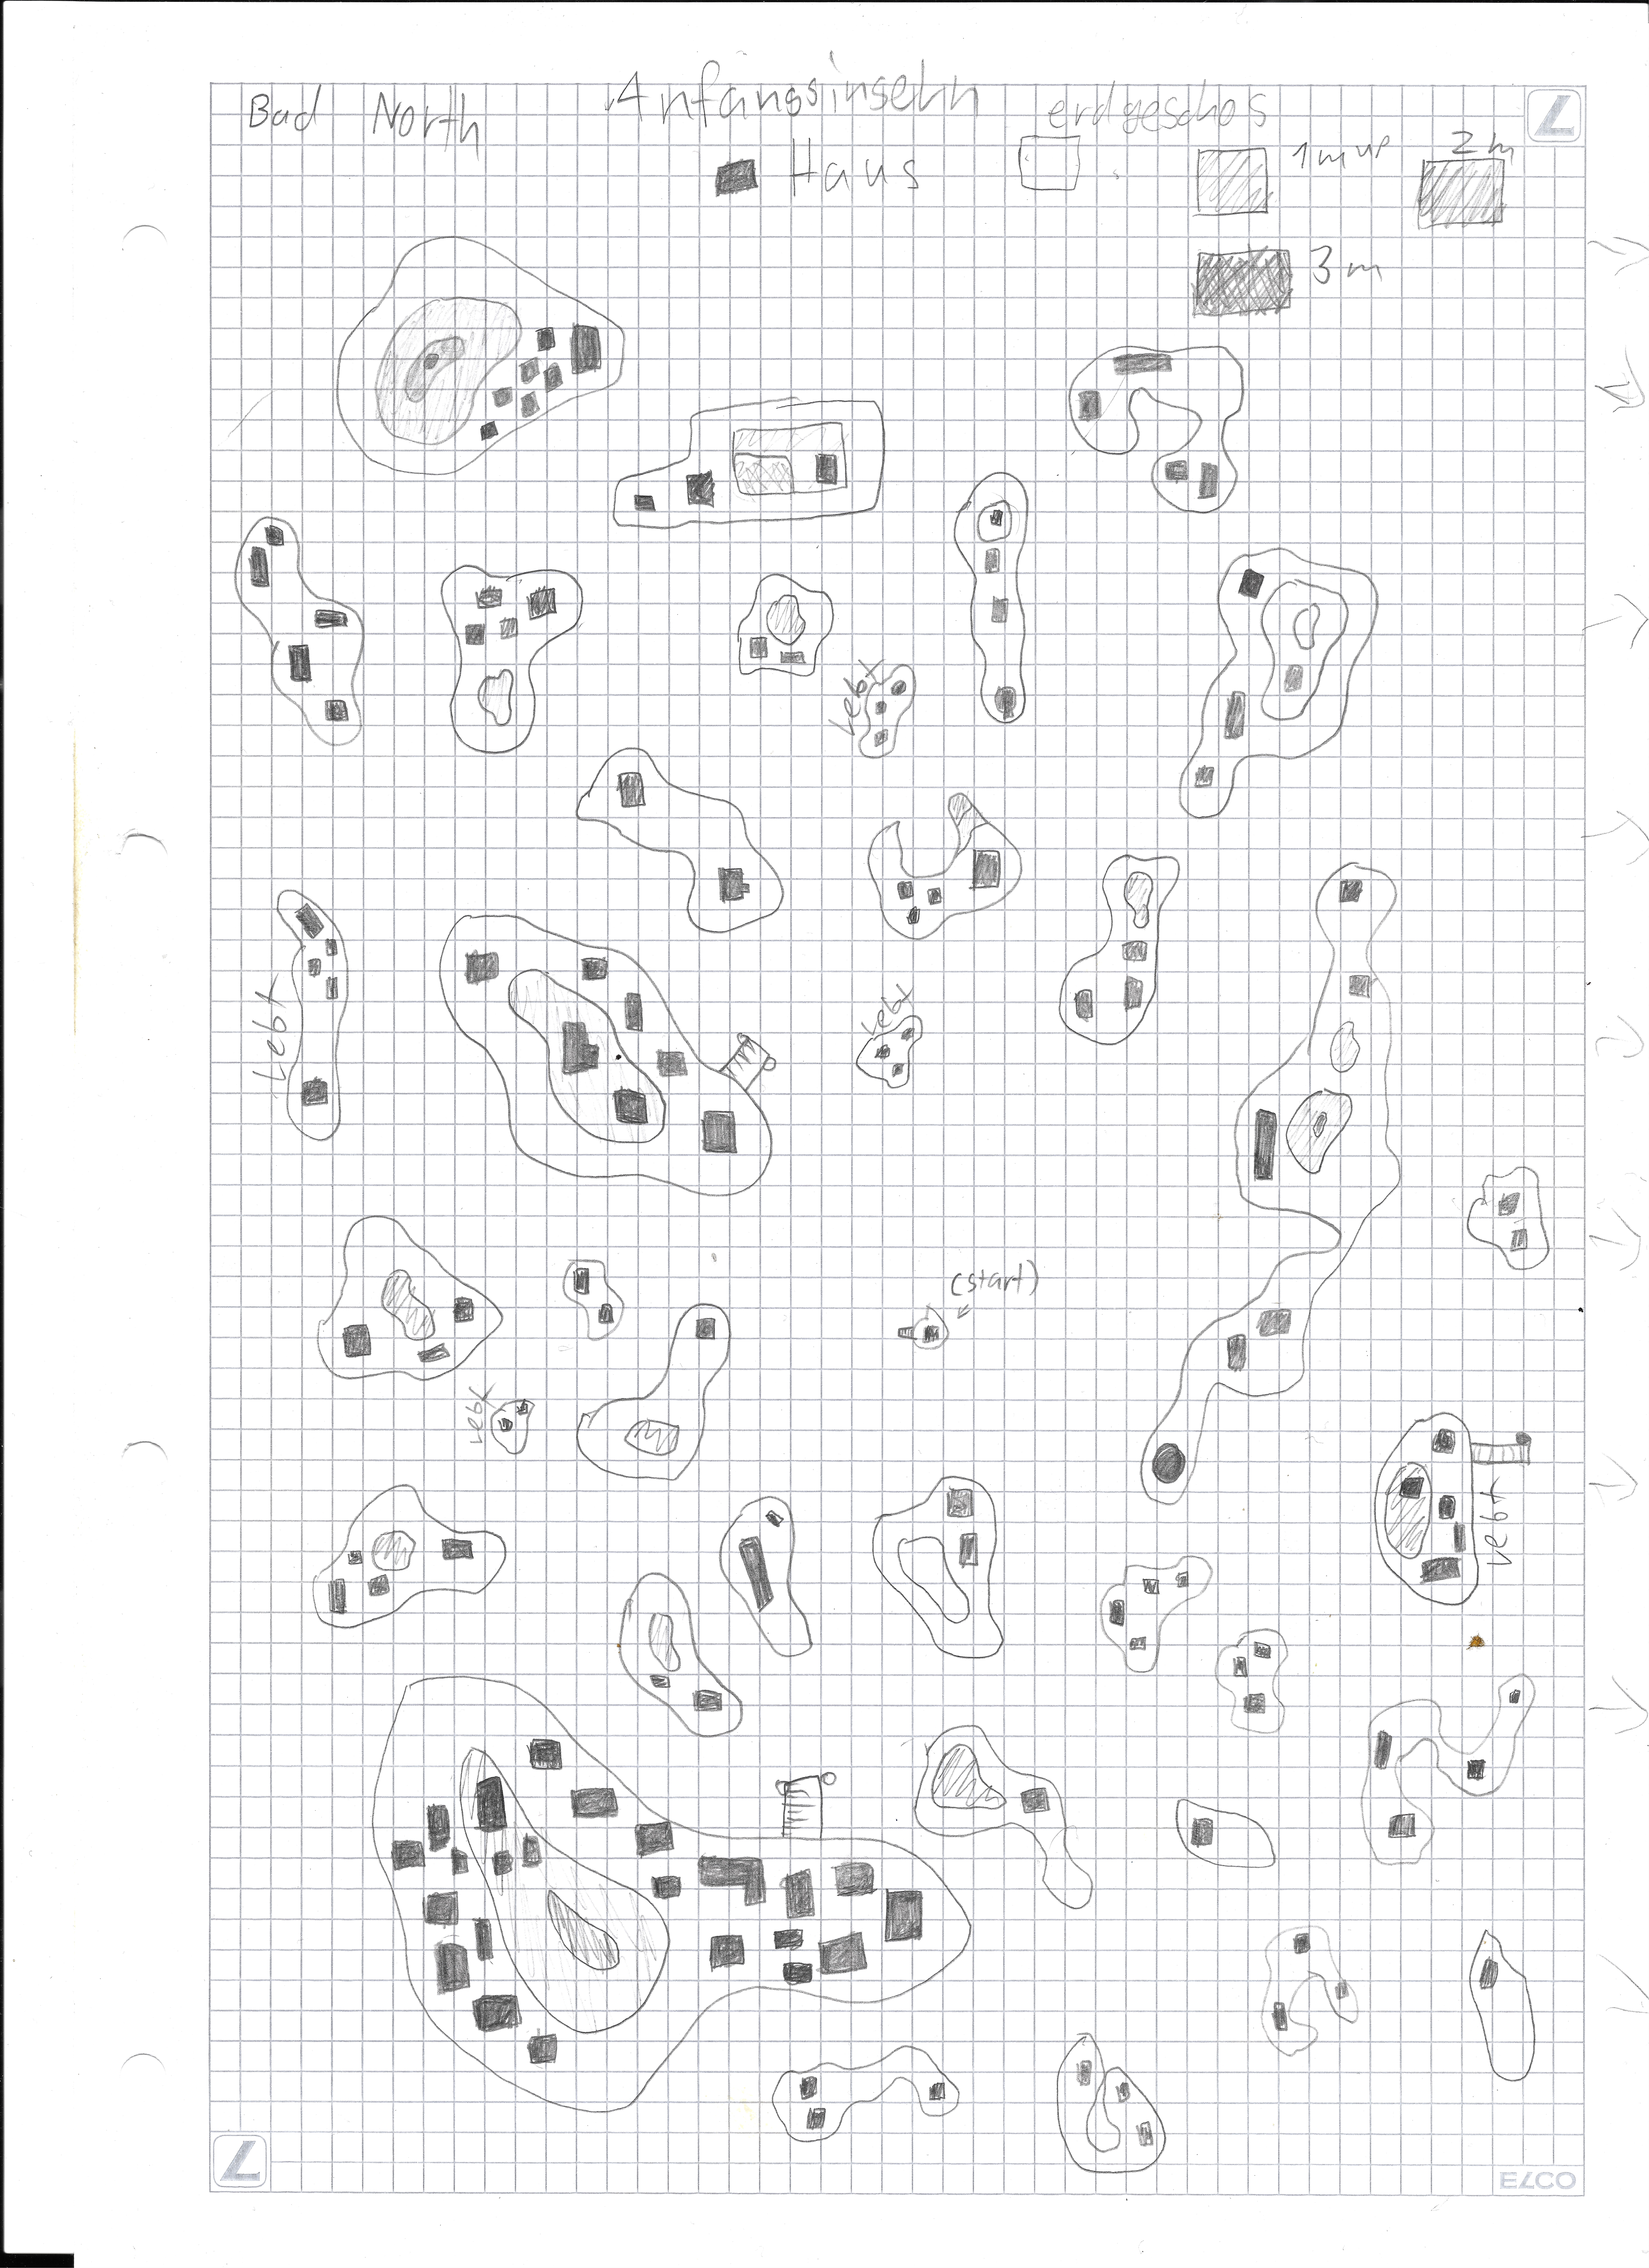 map of spiralworl part 1